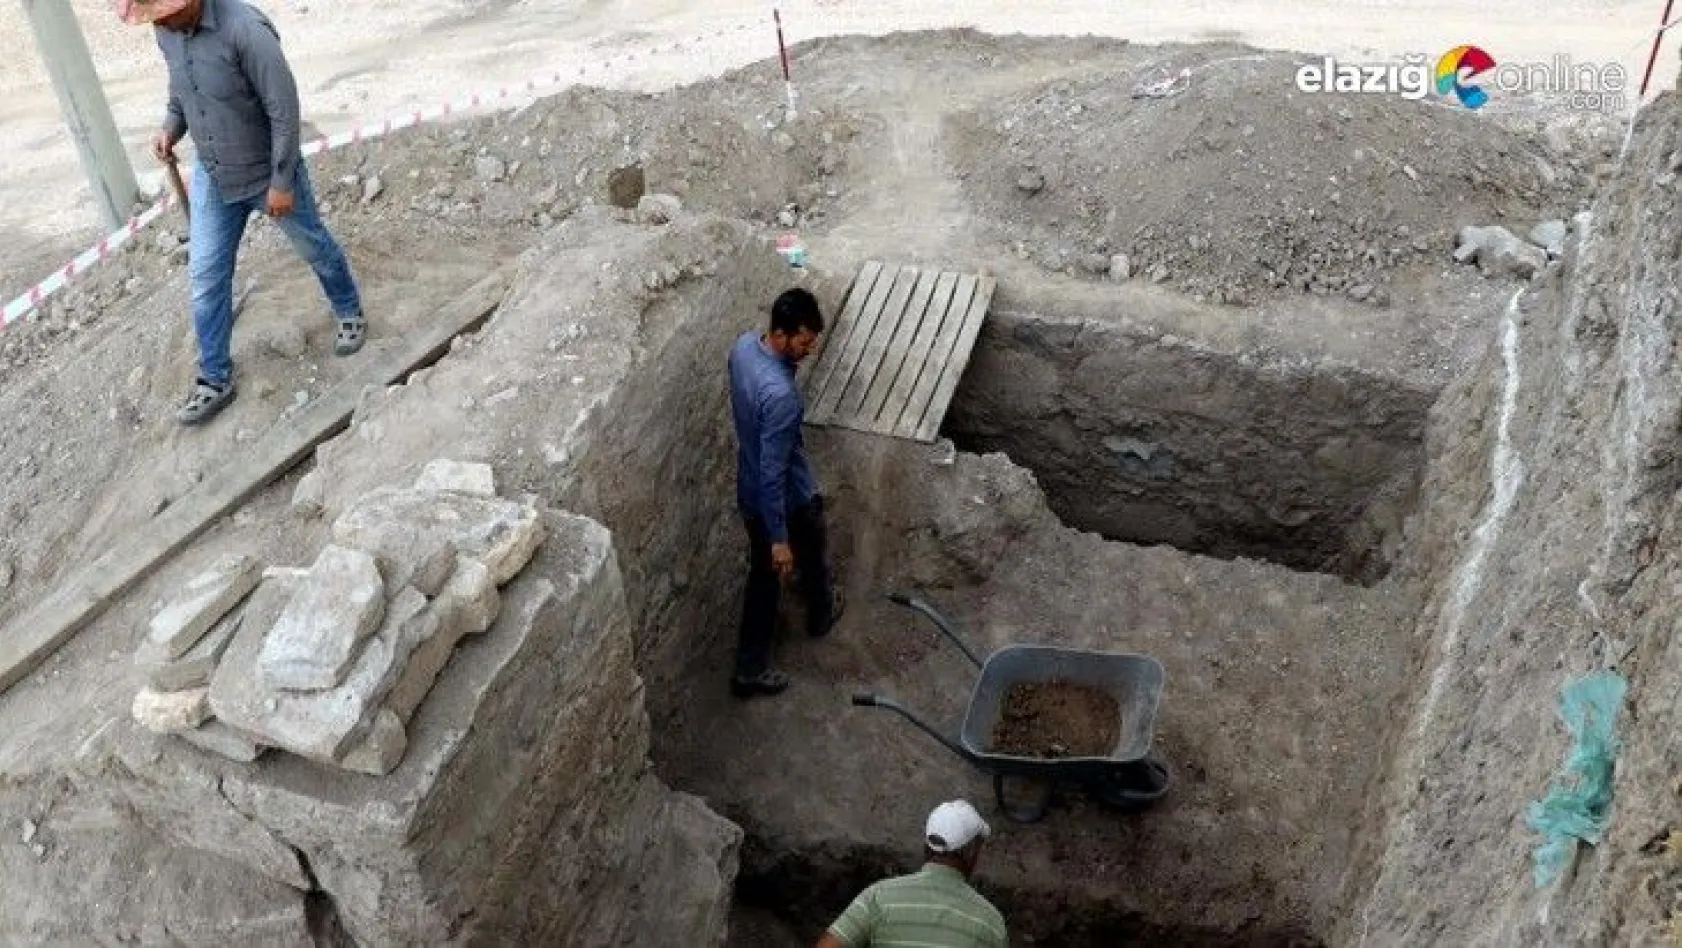 Elazığ'da Osmanlı dönemine ait olduğu değerlendirilen yapı bulundu